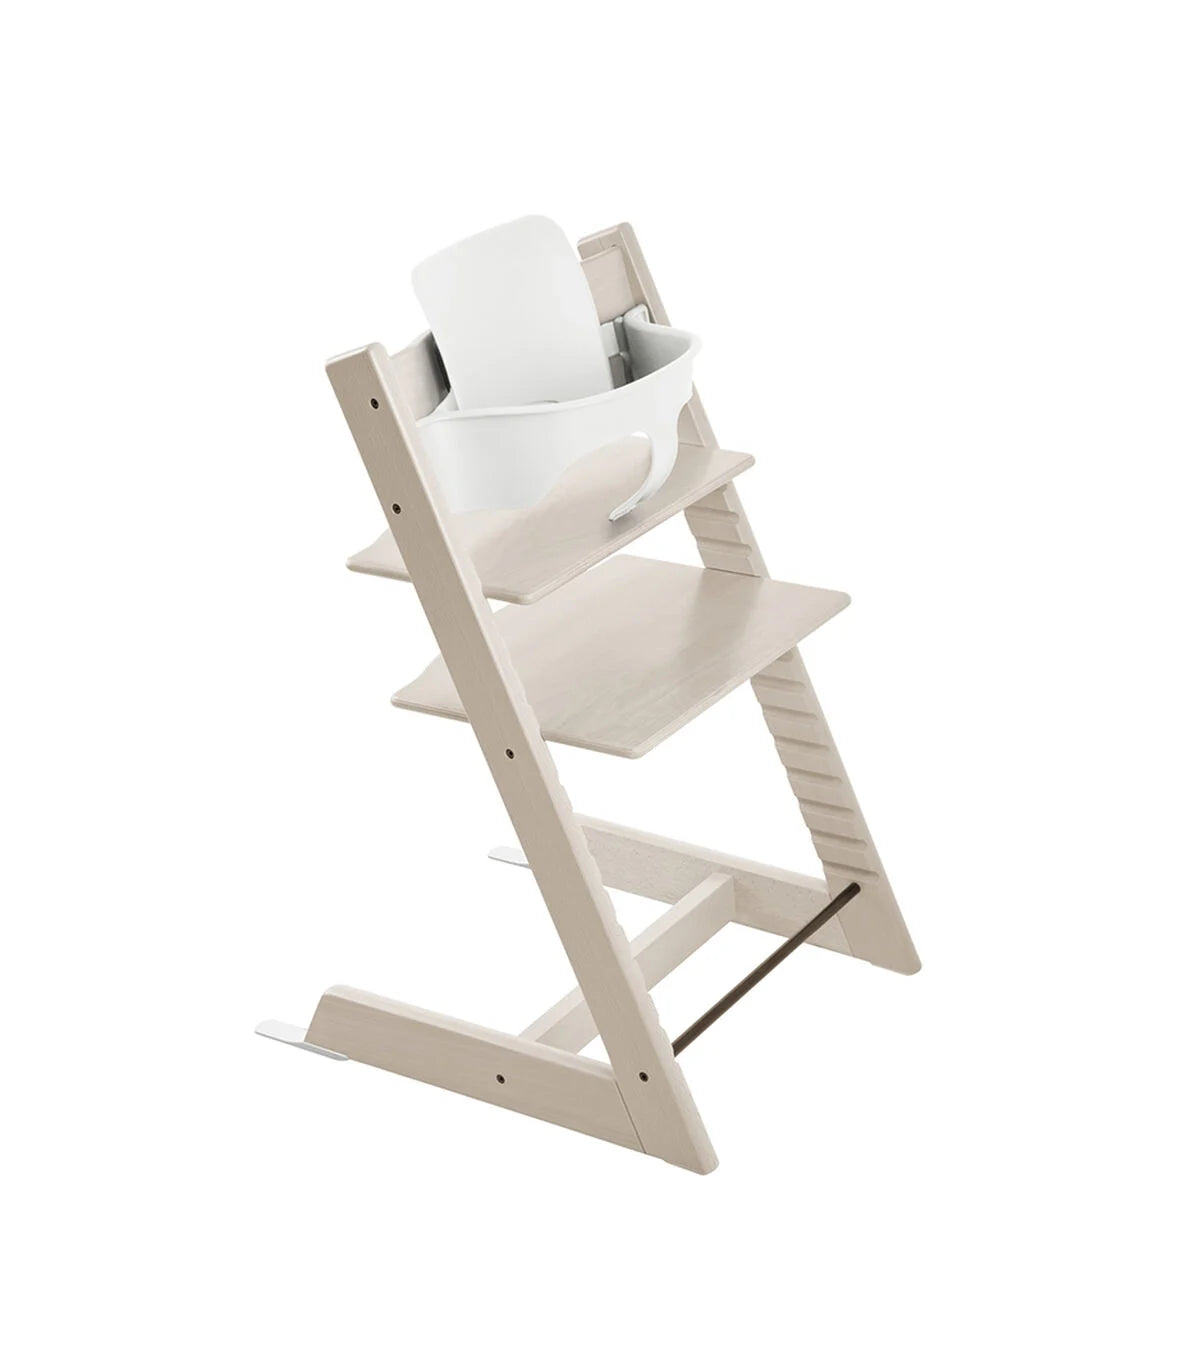 Tripp Trapp® Chair Whitewash